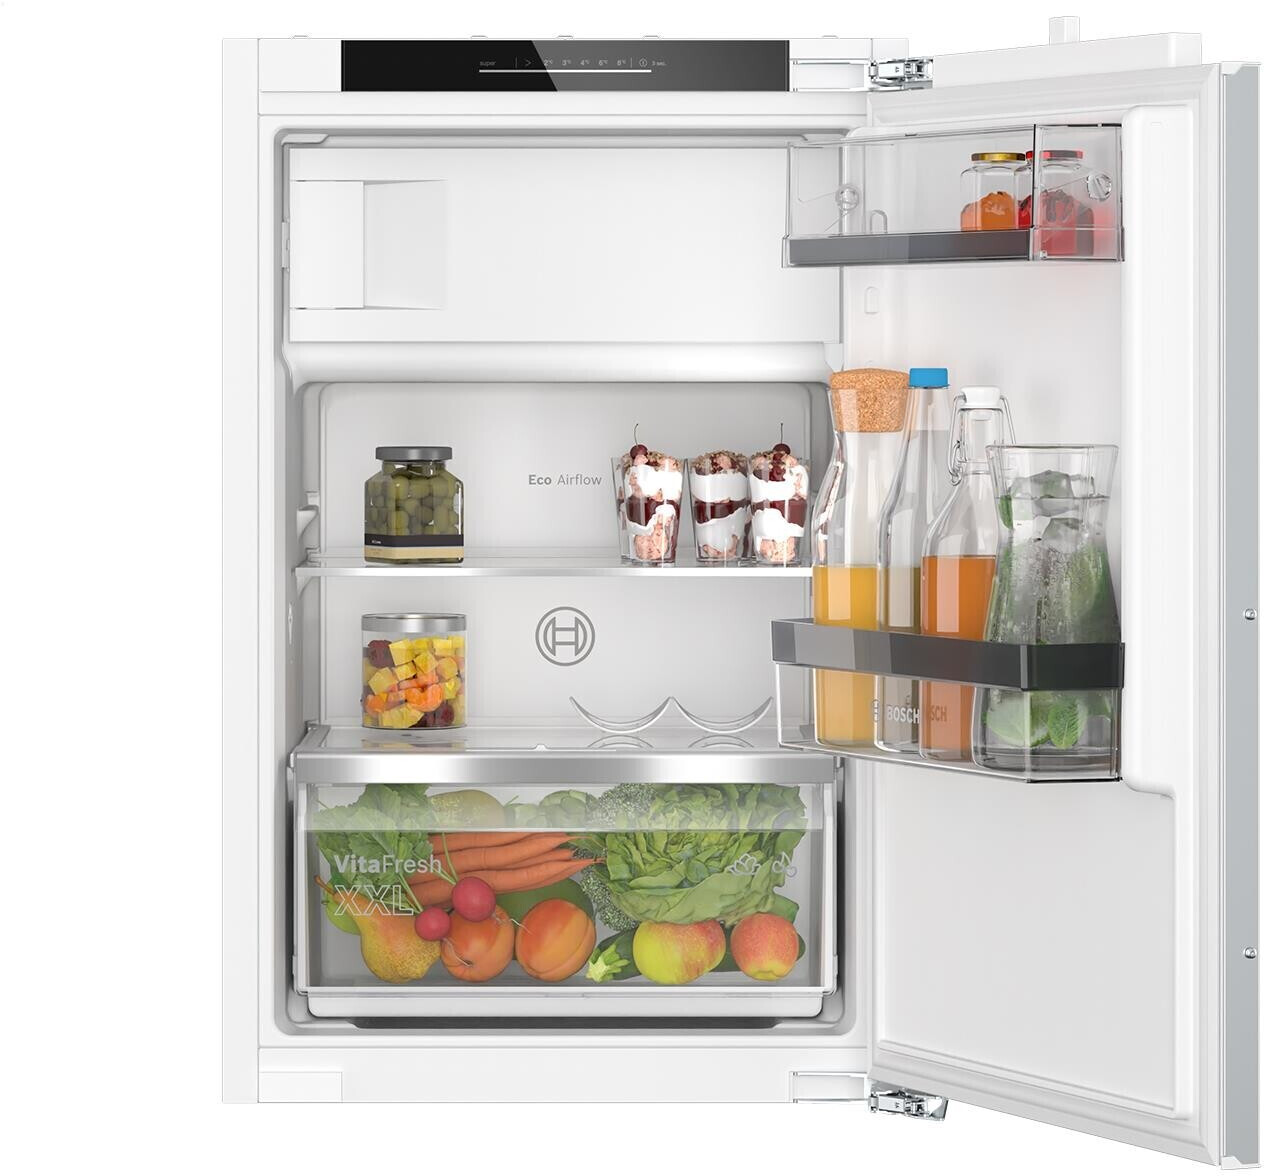  Bosch KIL22ADD1 Einbaukühlschrank  Inhalt Kühlbereich 104 Liter 